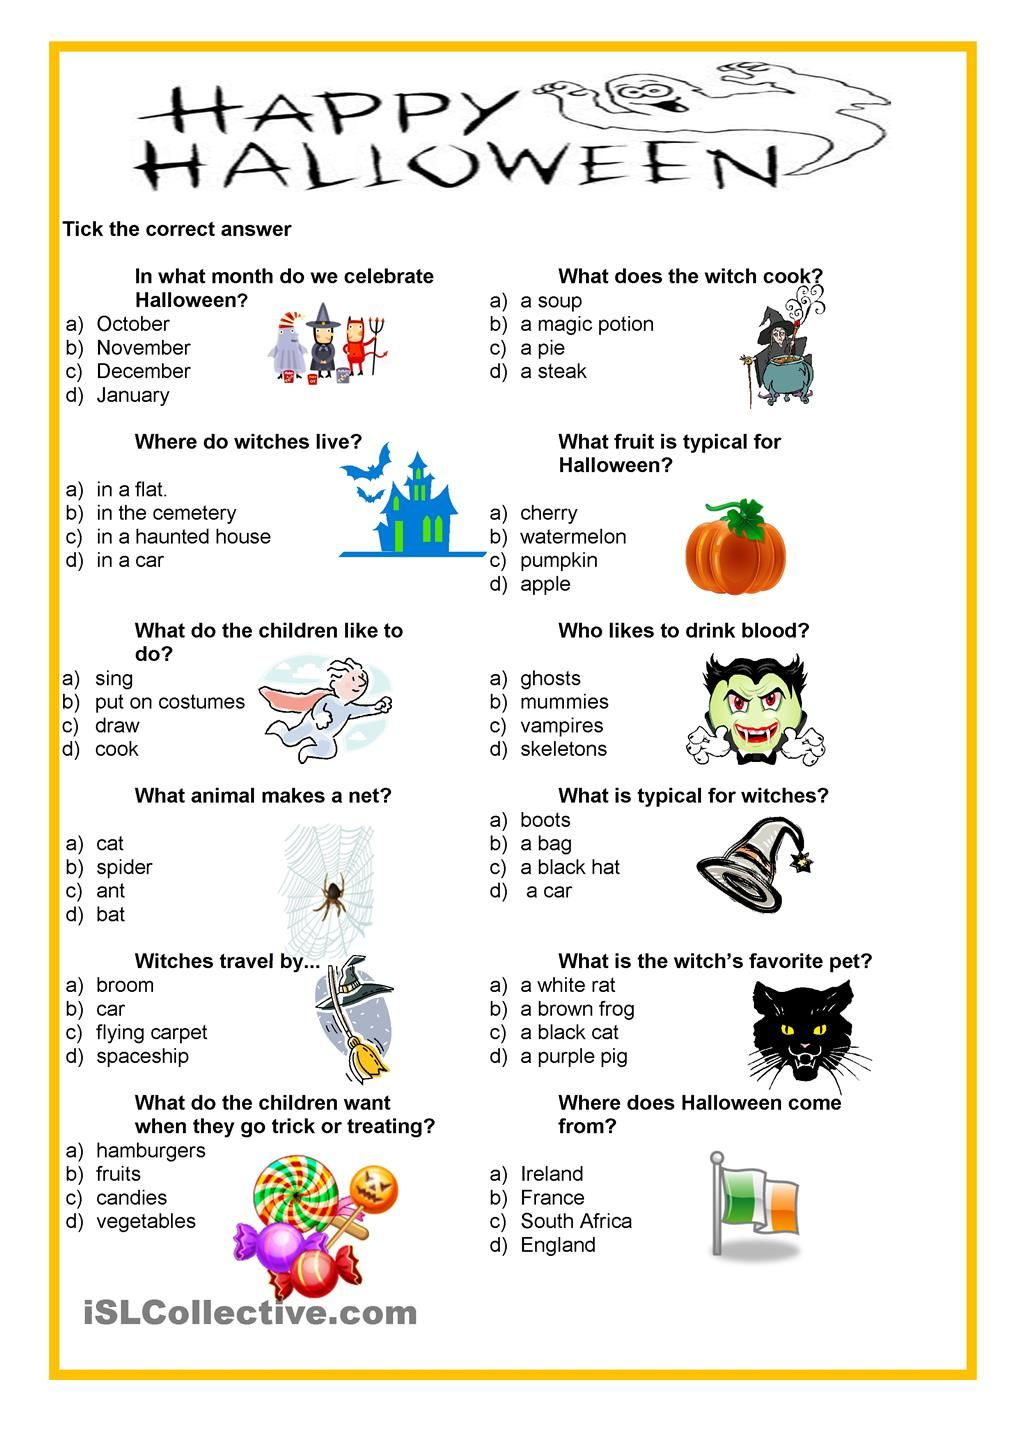 Happy Halloween - Quiz | Halloween Quiz, Halloween School